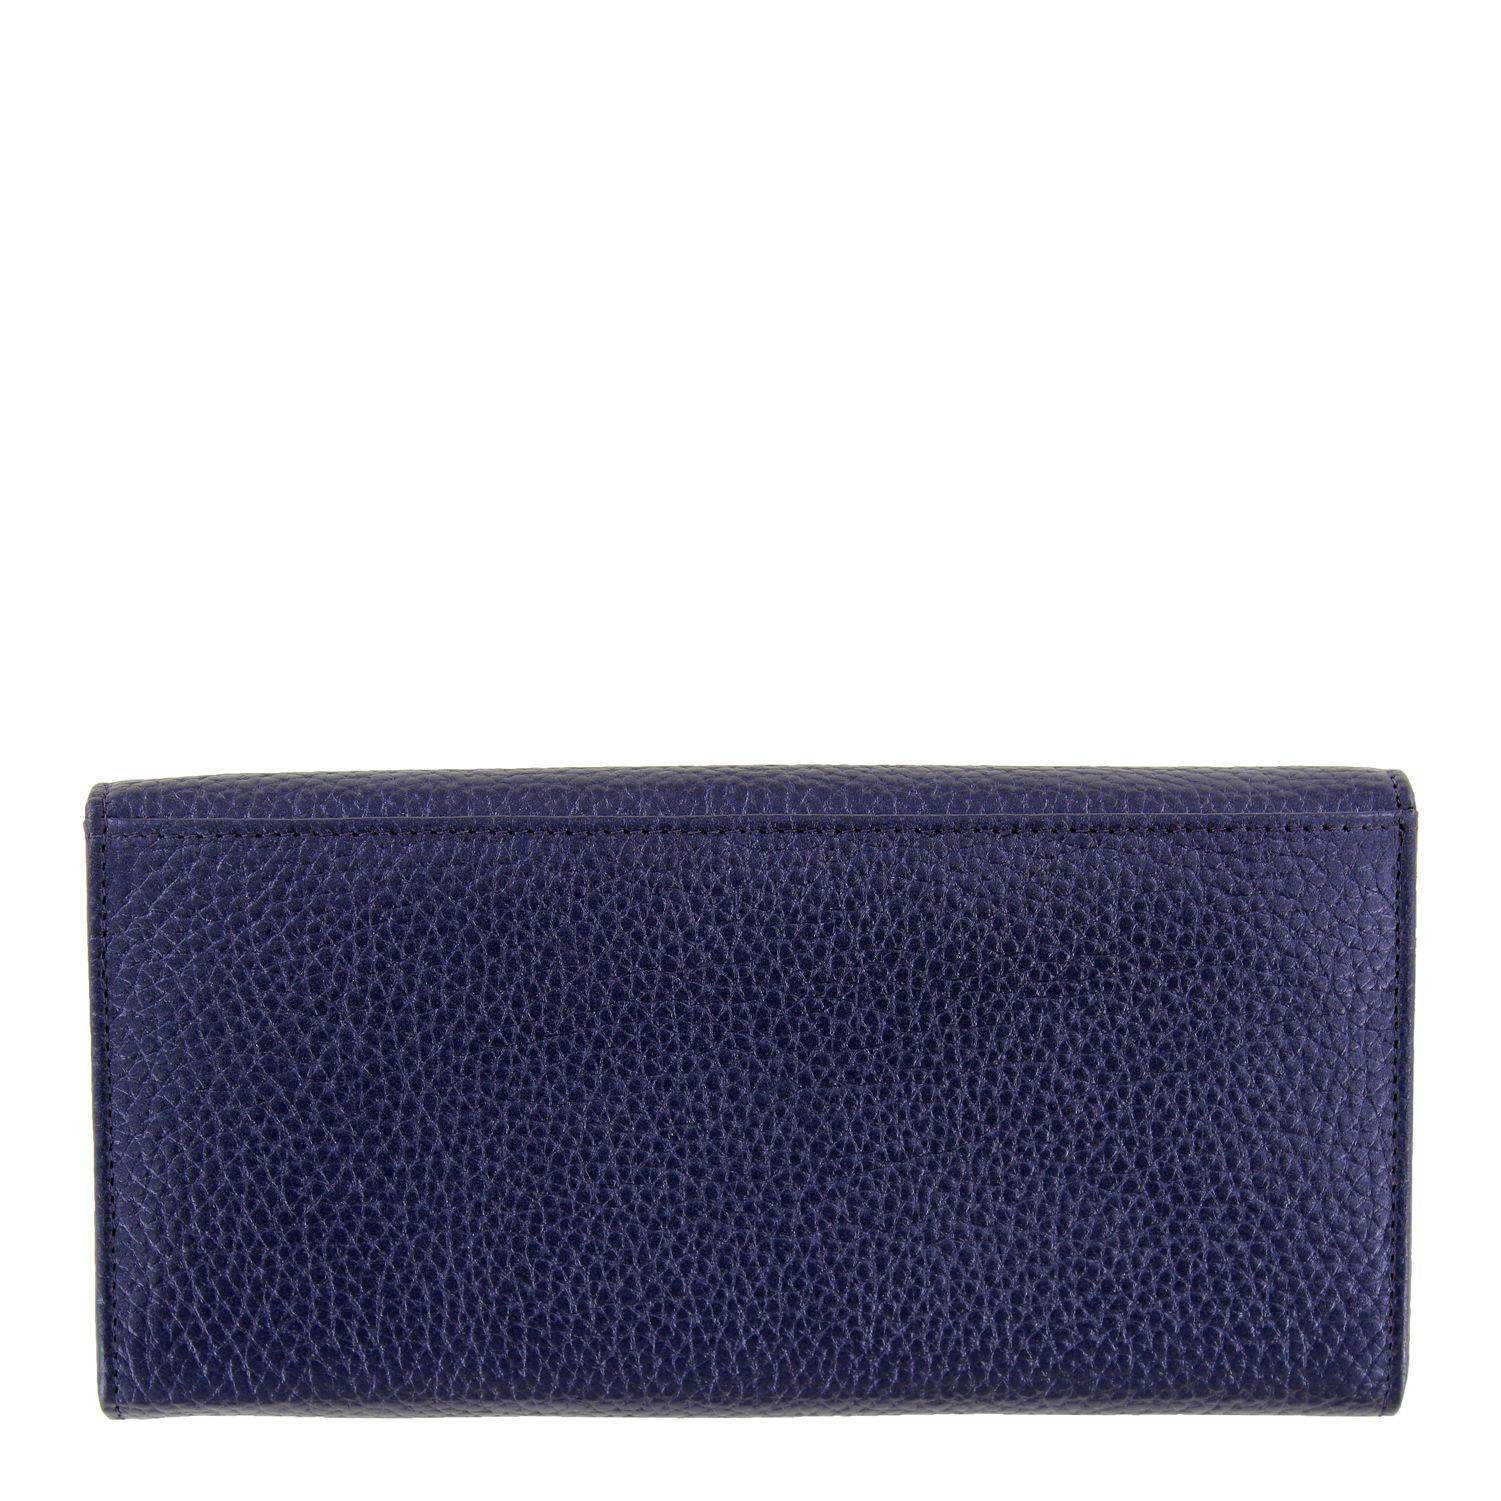 Кошелек Braun Buffel ASCOLI Wallet L 12CS 11458, цвет синий, размер ONE SIZE - фото 3